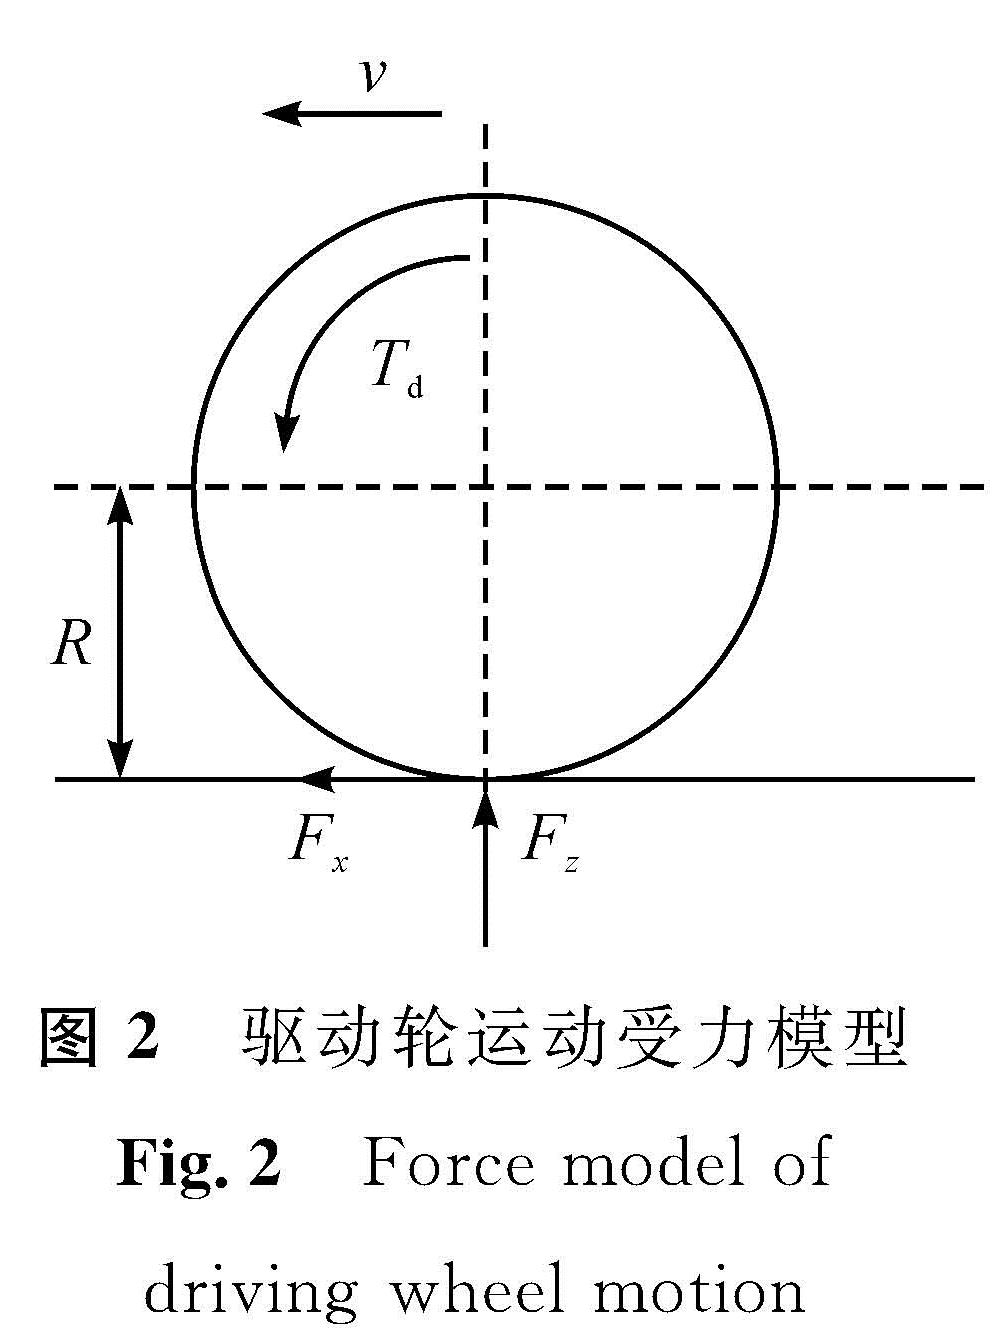 图2 驱动轮运动受力模型<br/>Fig.2 Force model of driving wheel motion